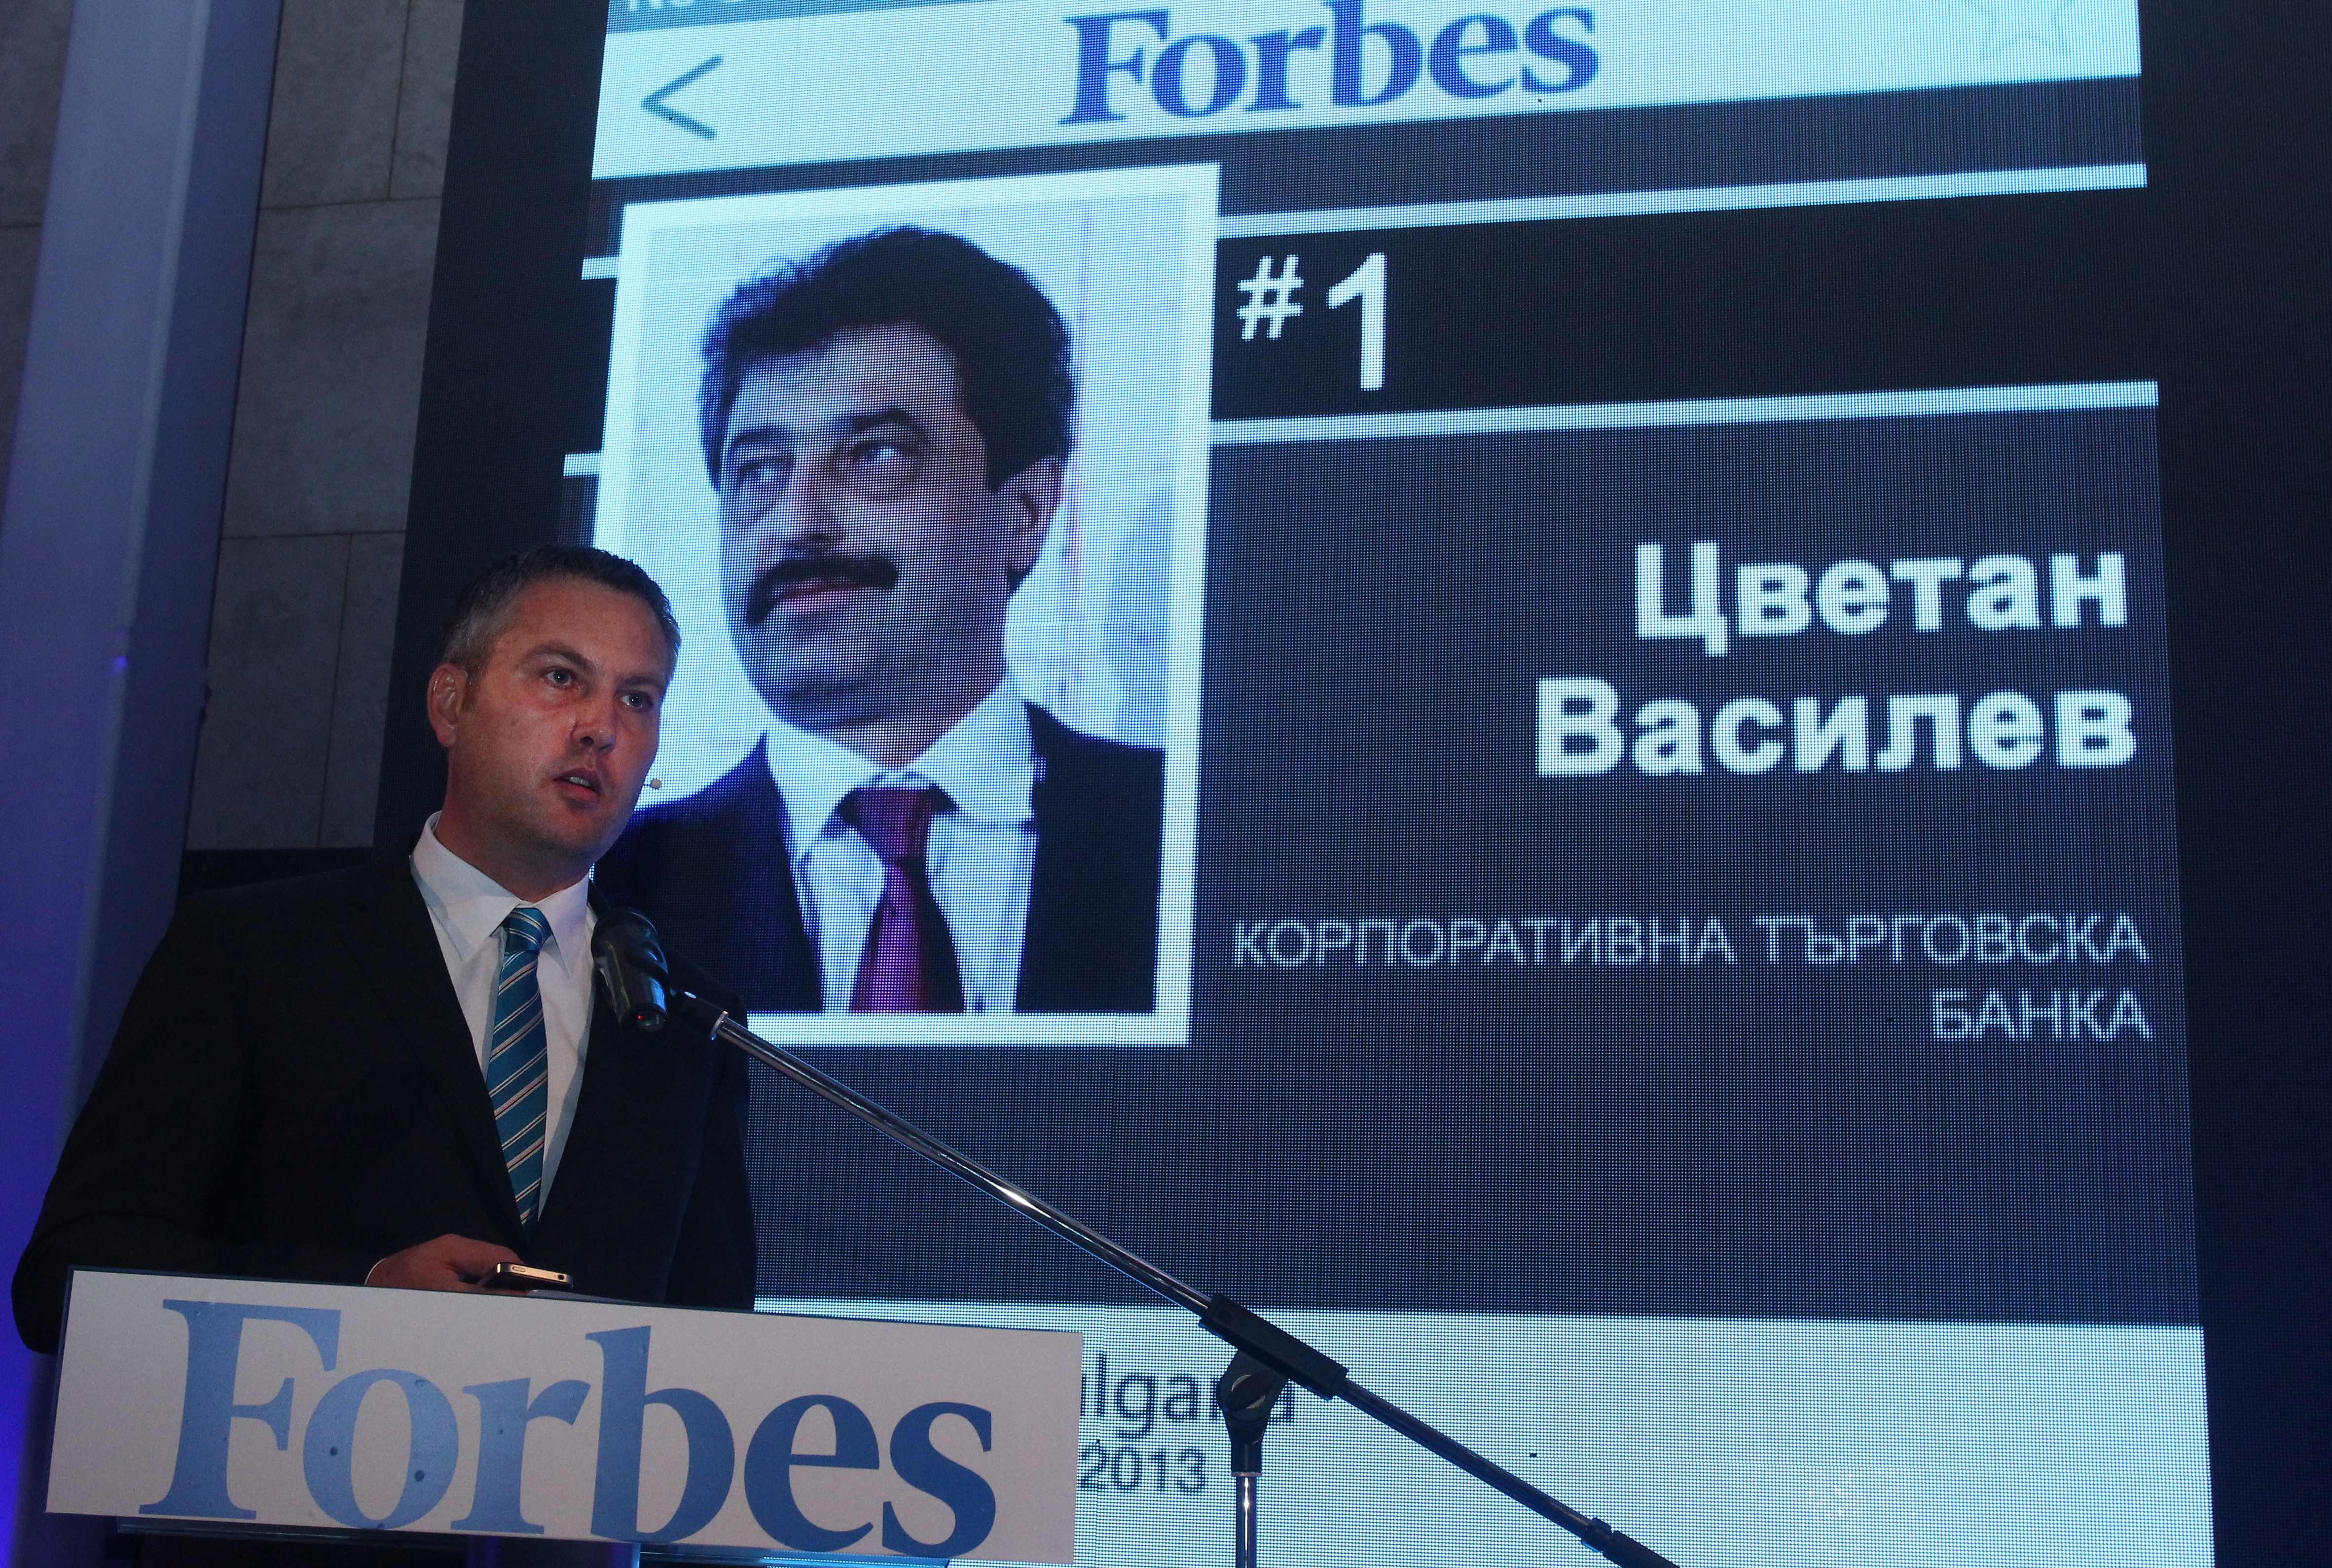 Цветан Василев бе обявен за най-влиятелен българин за 2013 г. в класацията на ”Форбс”